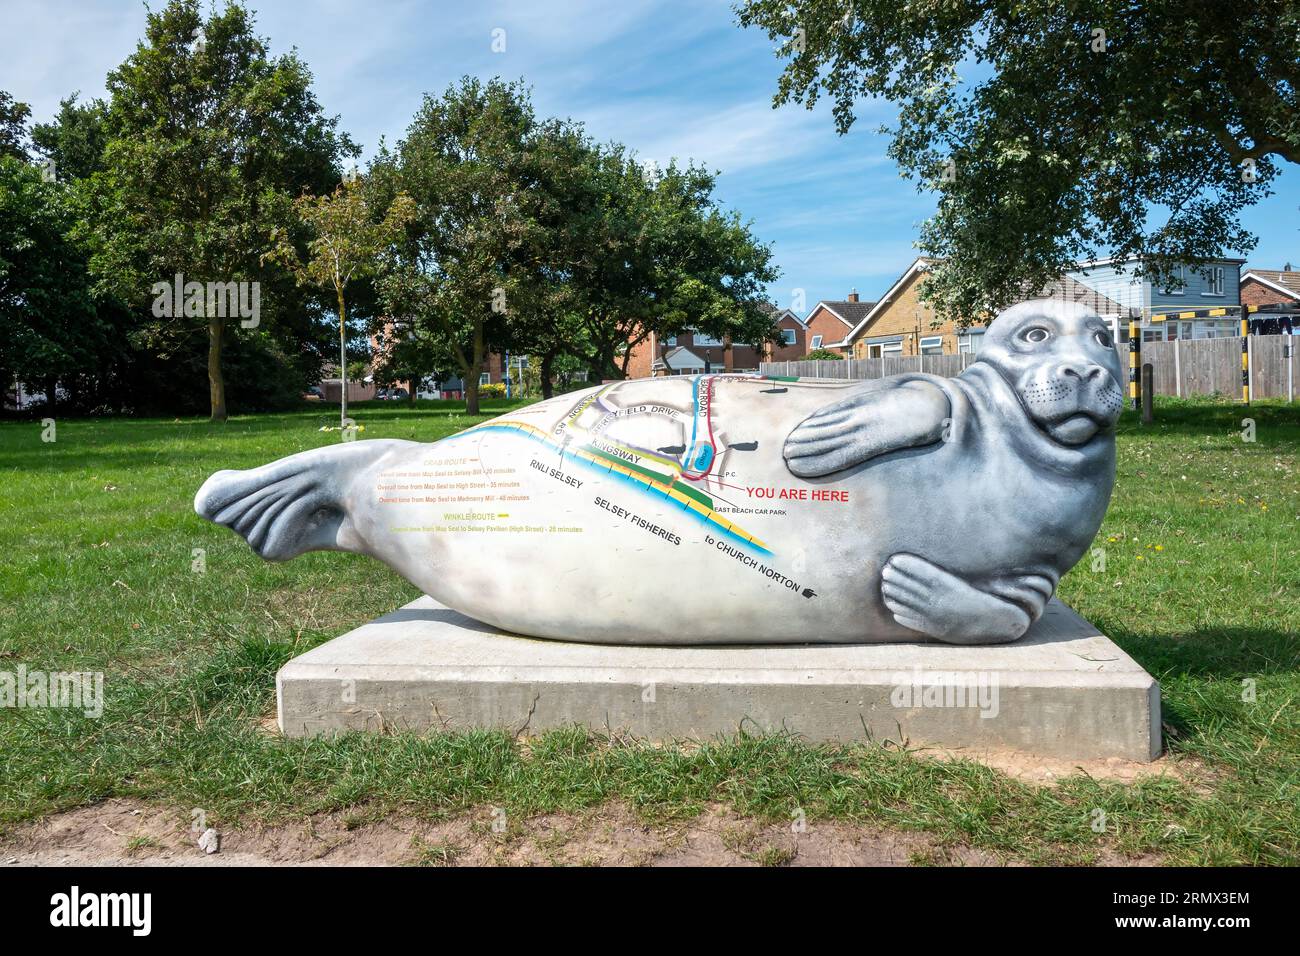 Selsey's Seal Art Trail sculpture de phoque complète avec carte du West Sussex Angleterre Banque D'Images